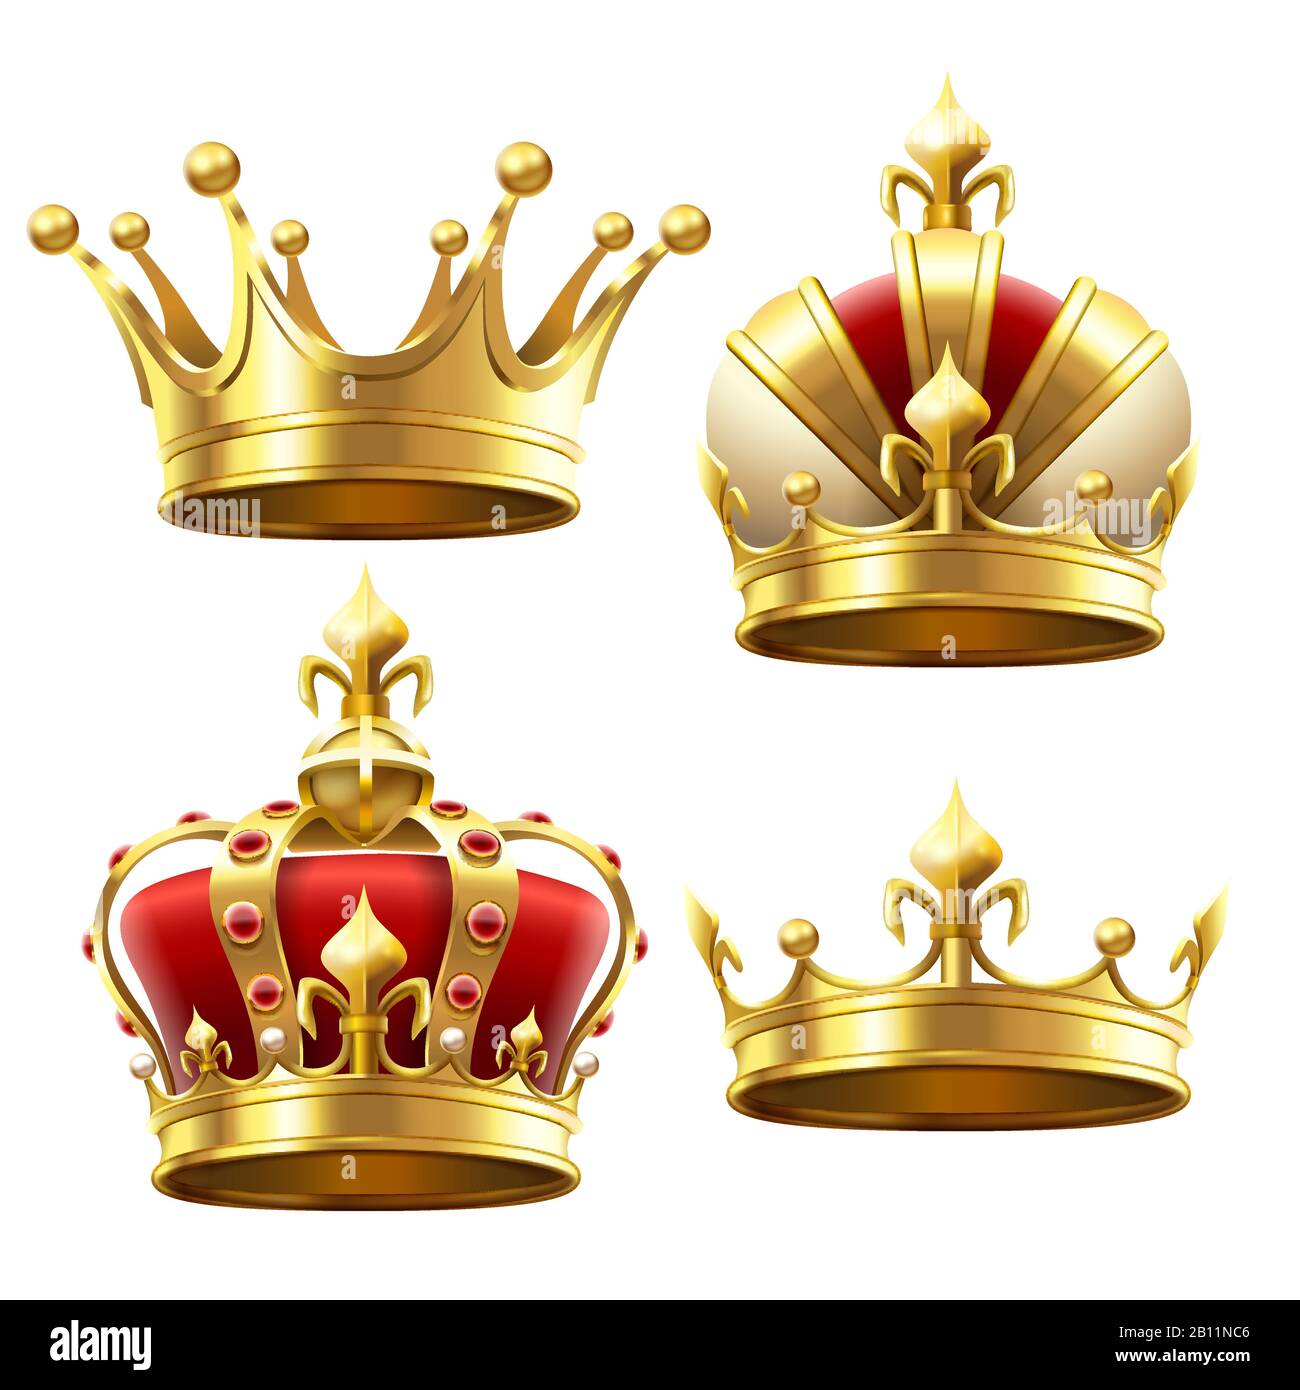 Realistische Goldkrone. Krönender Headdress für König und Königin. Vektorsatz Königskronen Stock Vektor